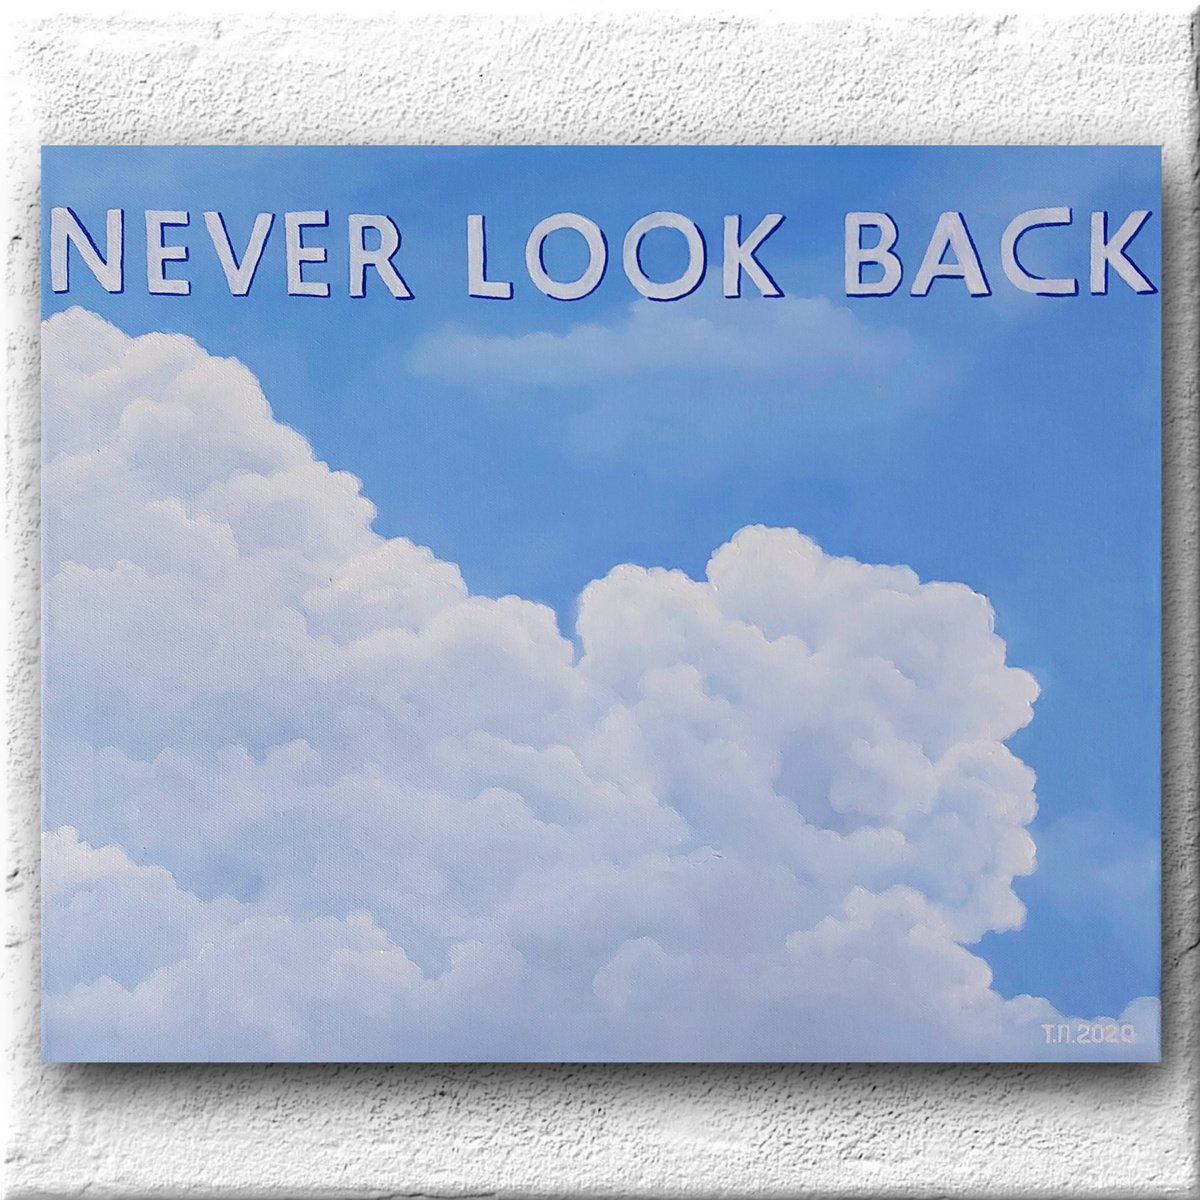 Never look back by Tatiana Popova